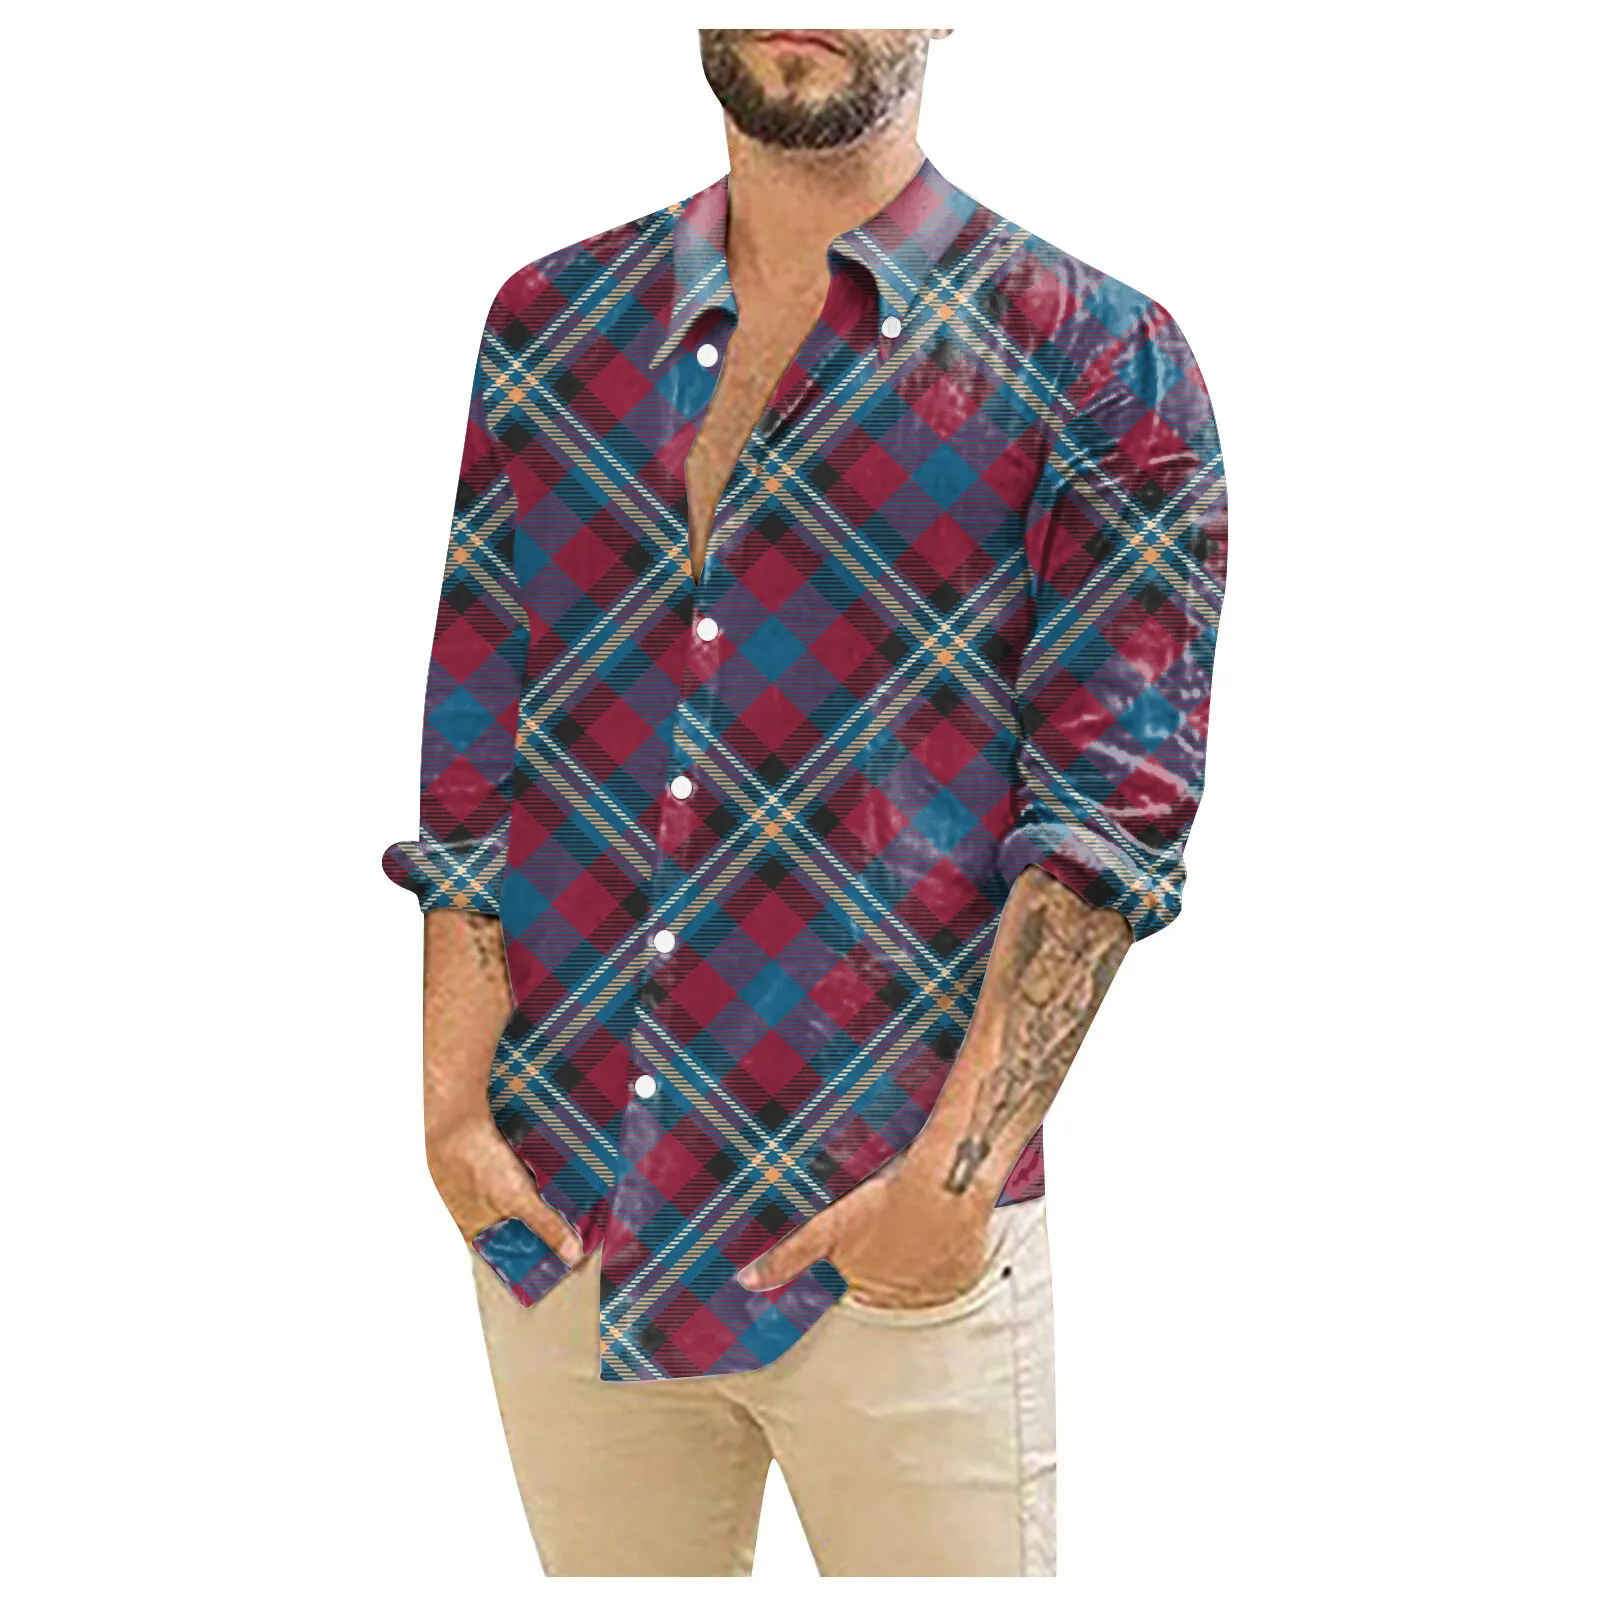 

Дизайнерская повседневная мужская рубашка с 3D рисунком, гавайская блузка, рубашки с длинным рукавом, рубашки в клетку, мужские рубашки, весна-лето